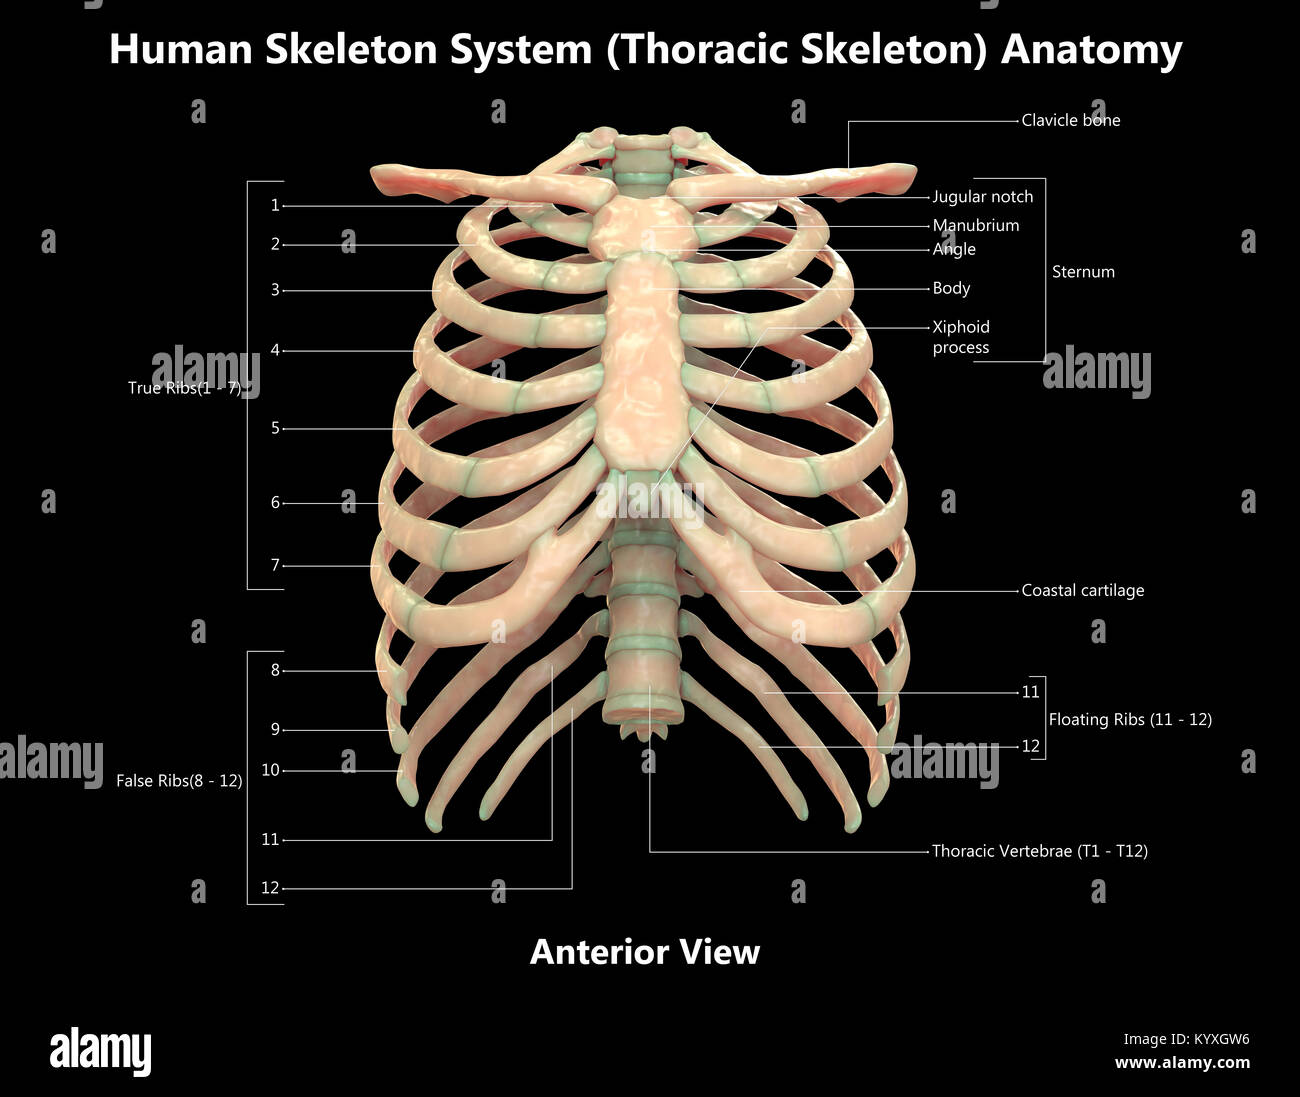 Human Skeleton System Thoracic Skeleton Label Design Anterior View Anatomy Stock Photo